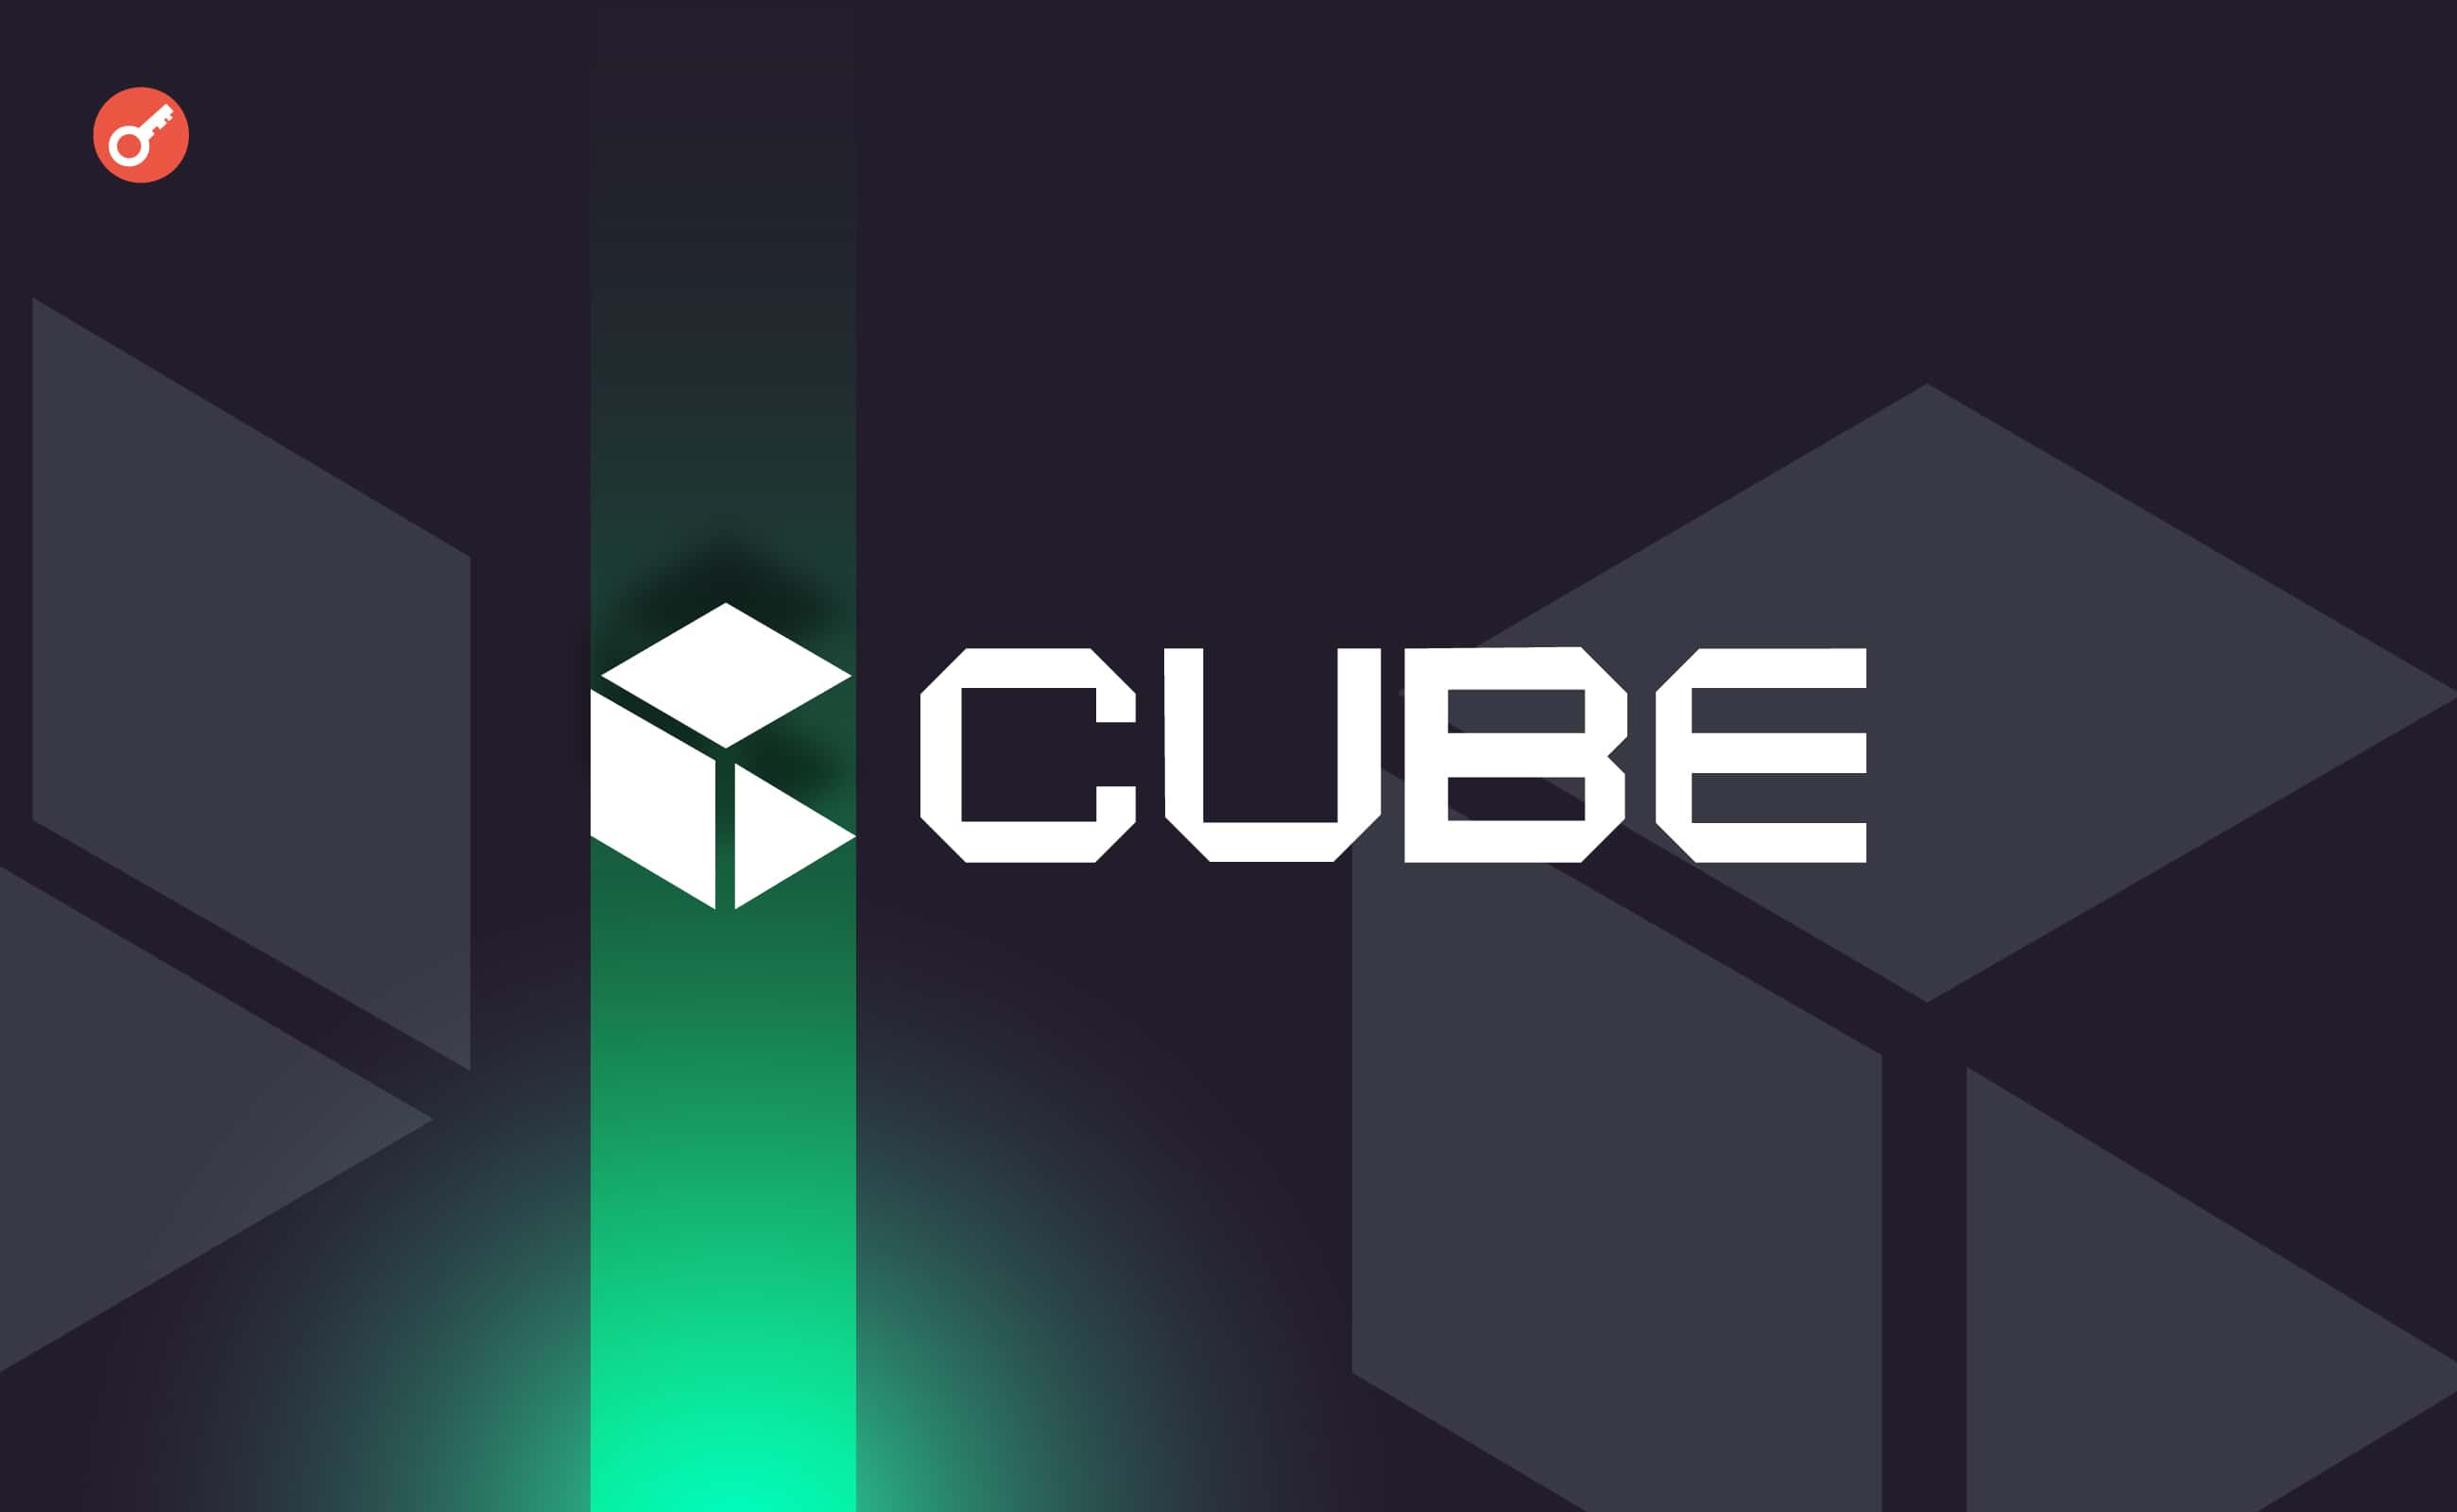 Cube.Exchange залучила $12 млн інвестицій. Головний колаж новини.